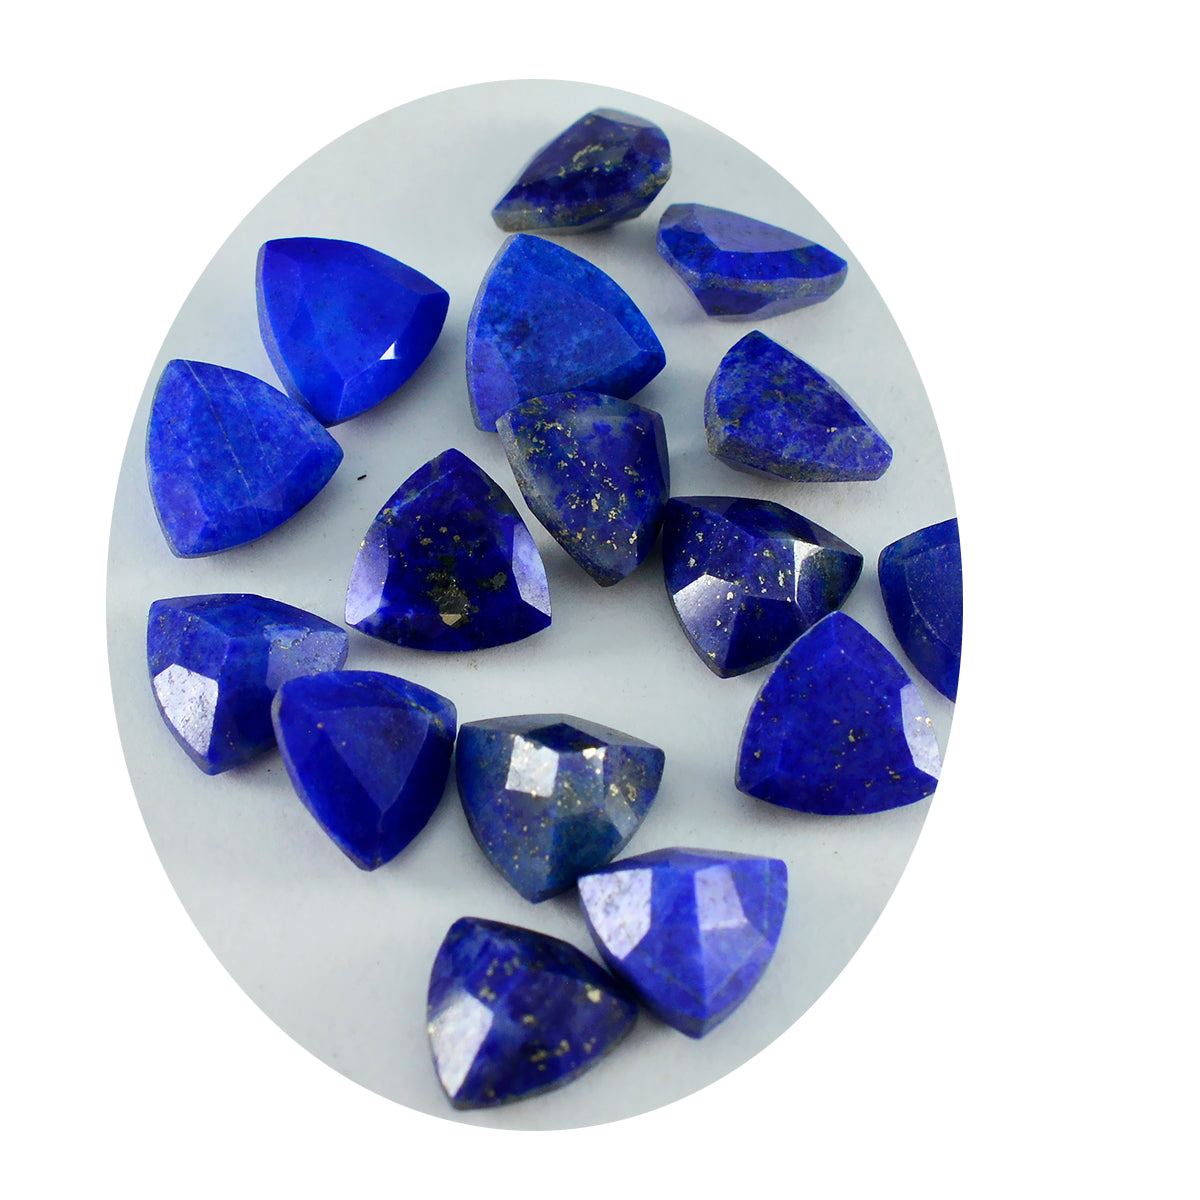 Riyogems, 1 pieza, lapislázuli azul auténtico facetado, 7x7mm, forma de billón, gemas sueltas de calidad y belleza